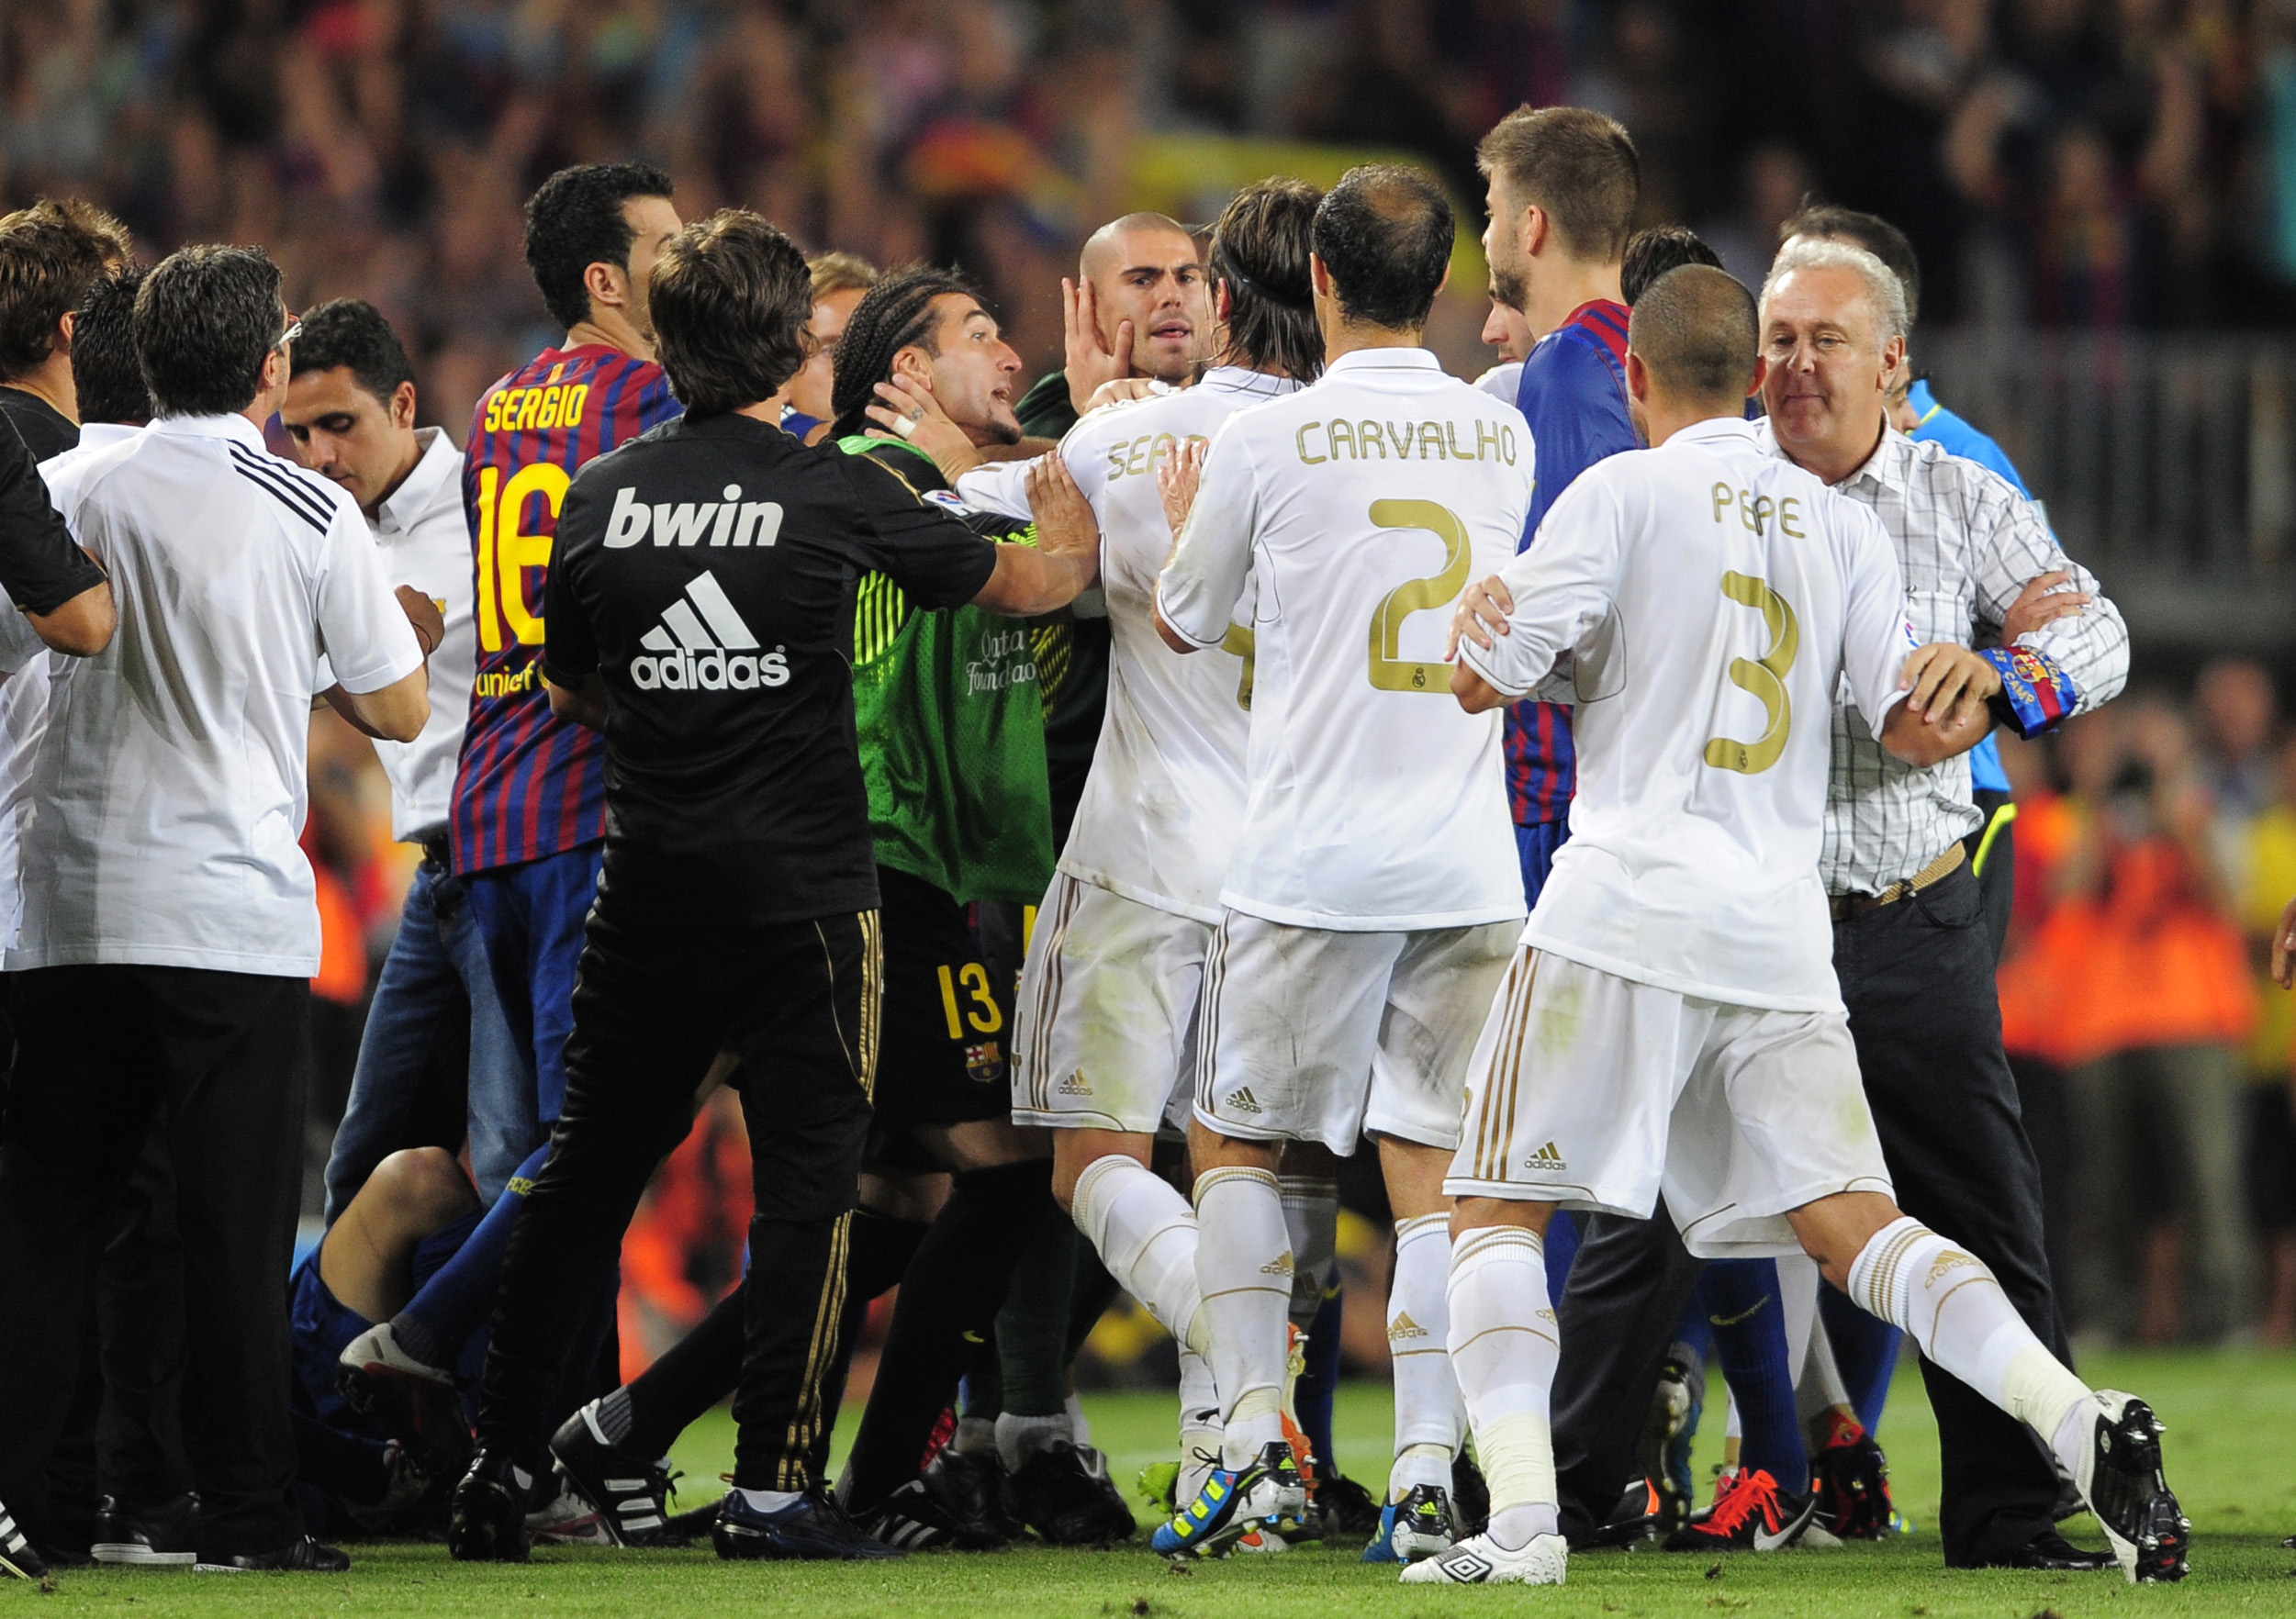 I sedvanlig ordning blev onsdagsnattens drabbning mellan Barcelona och Real Madrid en rejält stökig historia. Men även om filmningarna och de fula efterslängarna haglade, blev det här äntligen en match vi minns för de otroligt vackra målen. Och än mer för